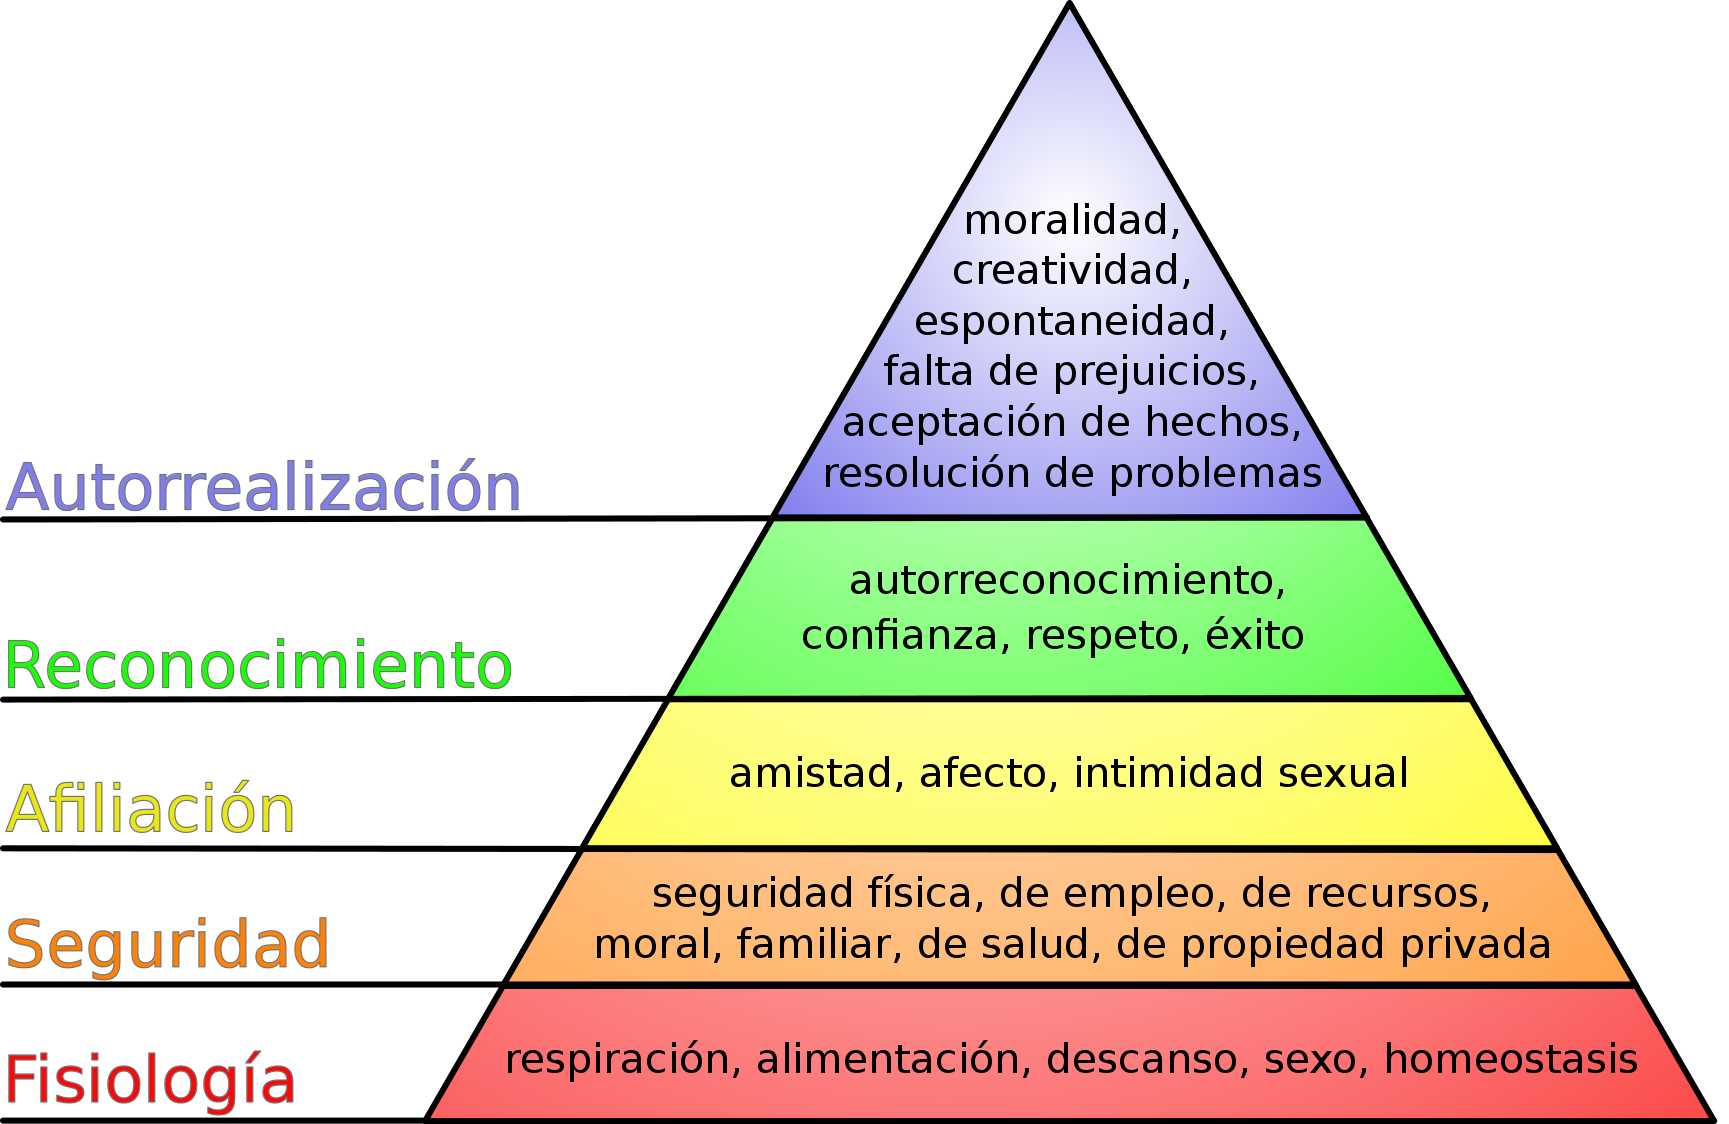 Maslow estableció una jerarquización de las necesidades del ser humano y las reflejó en una pirámide